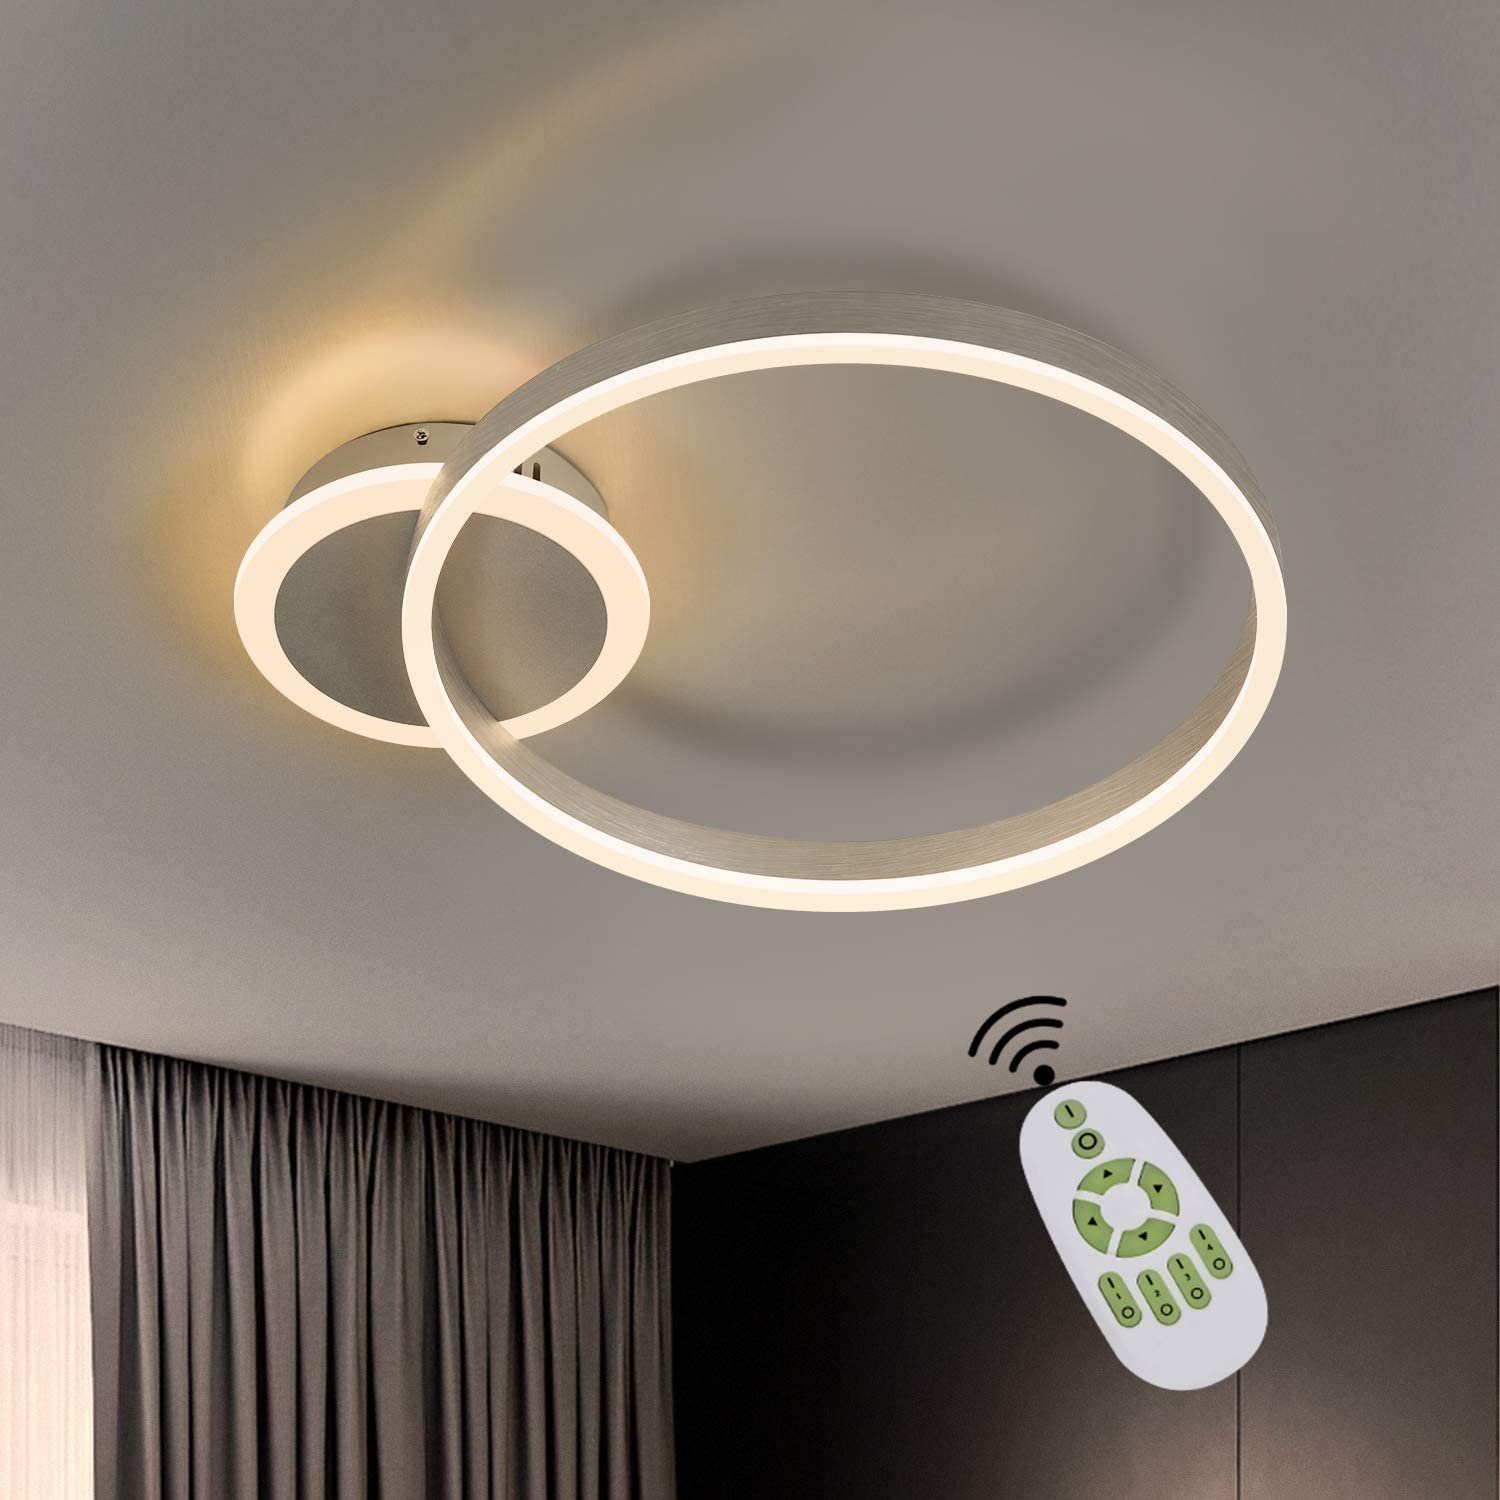 ZMH LED Deckenleuchte »Deckenlampe Wohnzimmer dimmbar mit Fernbedienung 37W  48CM in Ring-Design Memory Funktion für Schlafzimmer Küche Esszimmer«  online kaufen | OTTO